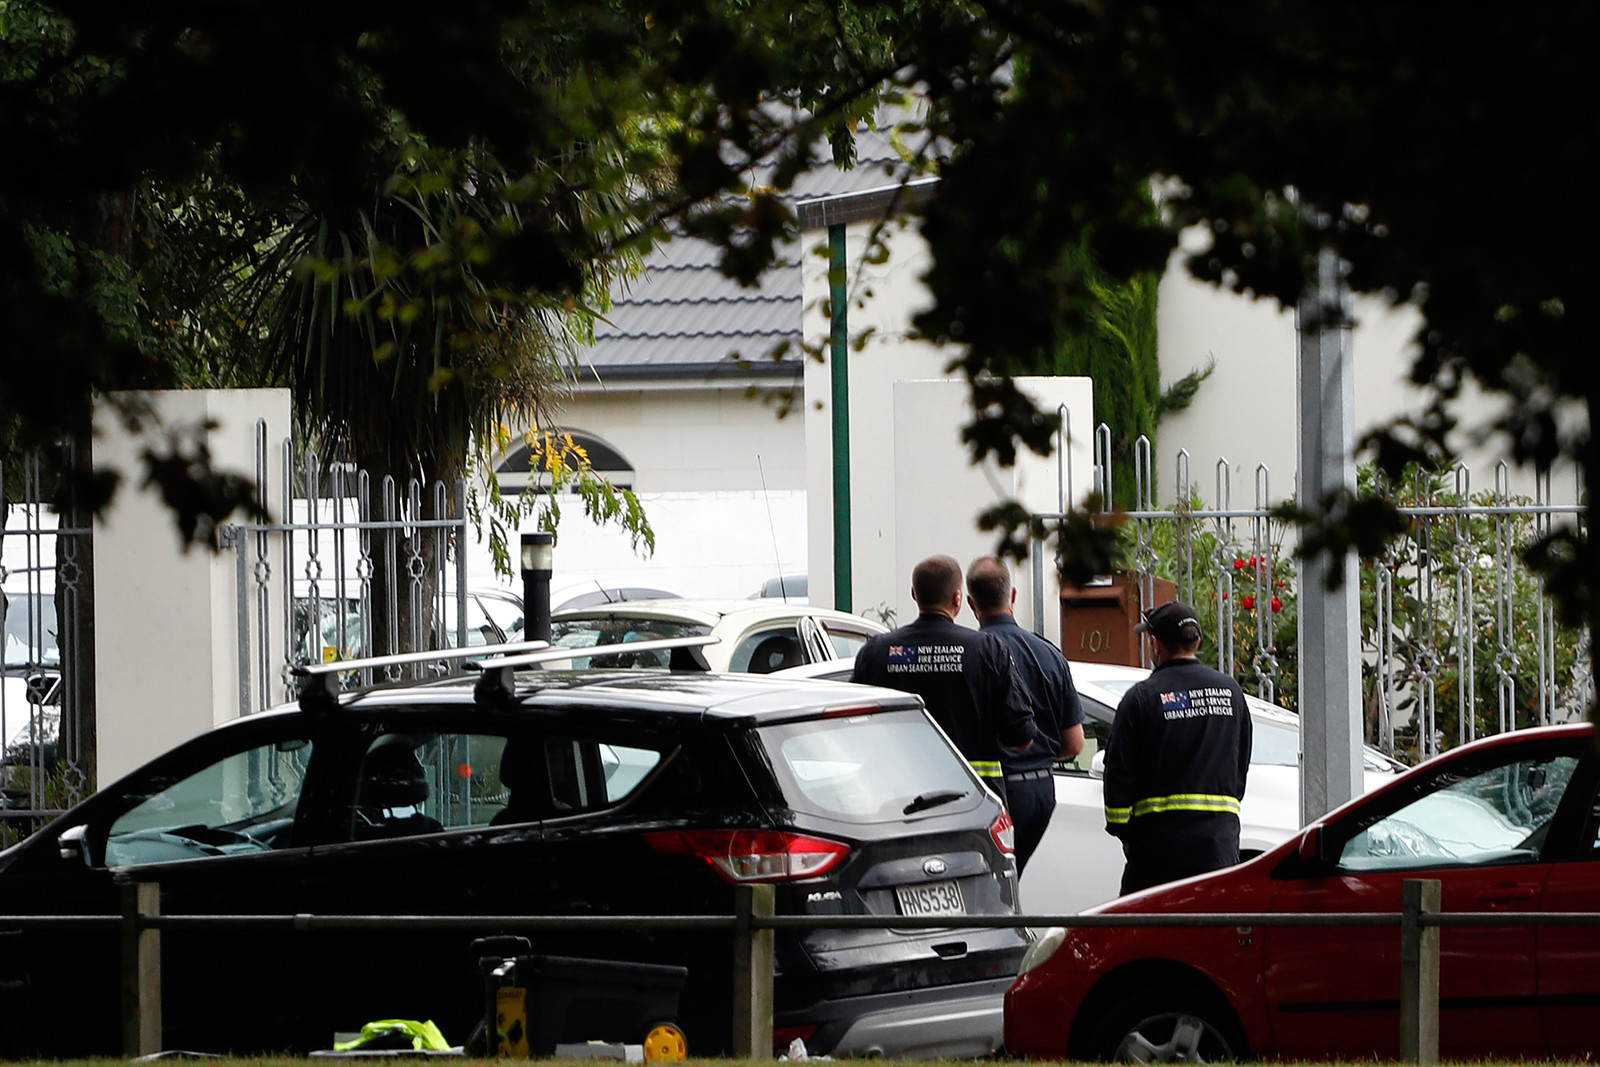 Nuova Zelanda, attacco terroristico in due moschee: almeno 49 morti e 48 feriti. Tra gli assalitori un suprematista bianco